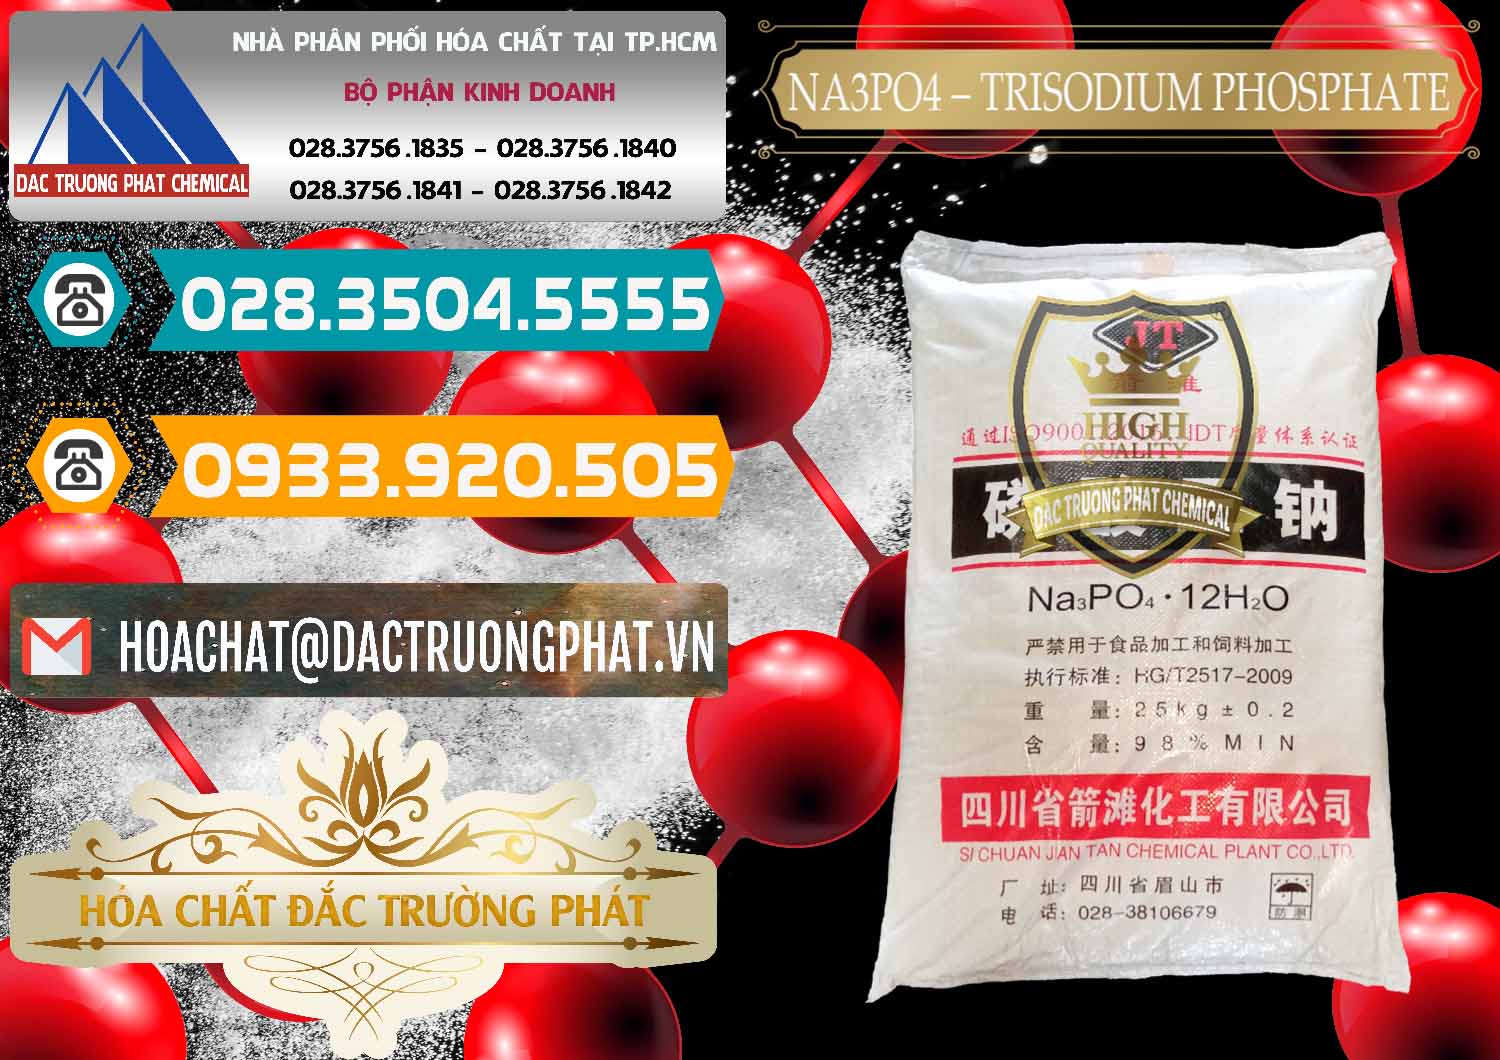 Cty chuyên bán & cung ứng Na3PO4 – Trisodium Phosphate Trung Quốc China JT - 0102 - Chuyên cung cấp & kinh doanh hóa chất tại TP.HCM - congtyhoachat.vn